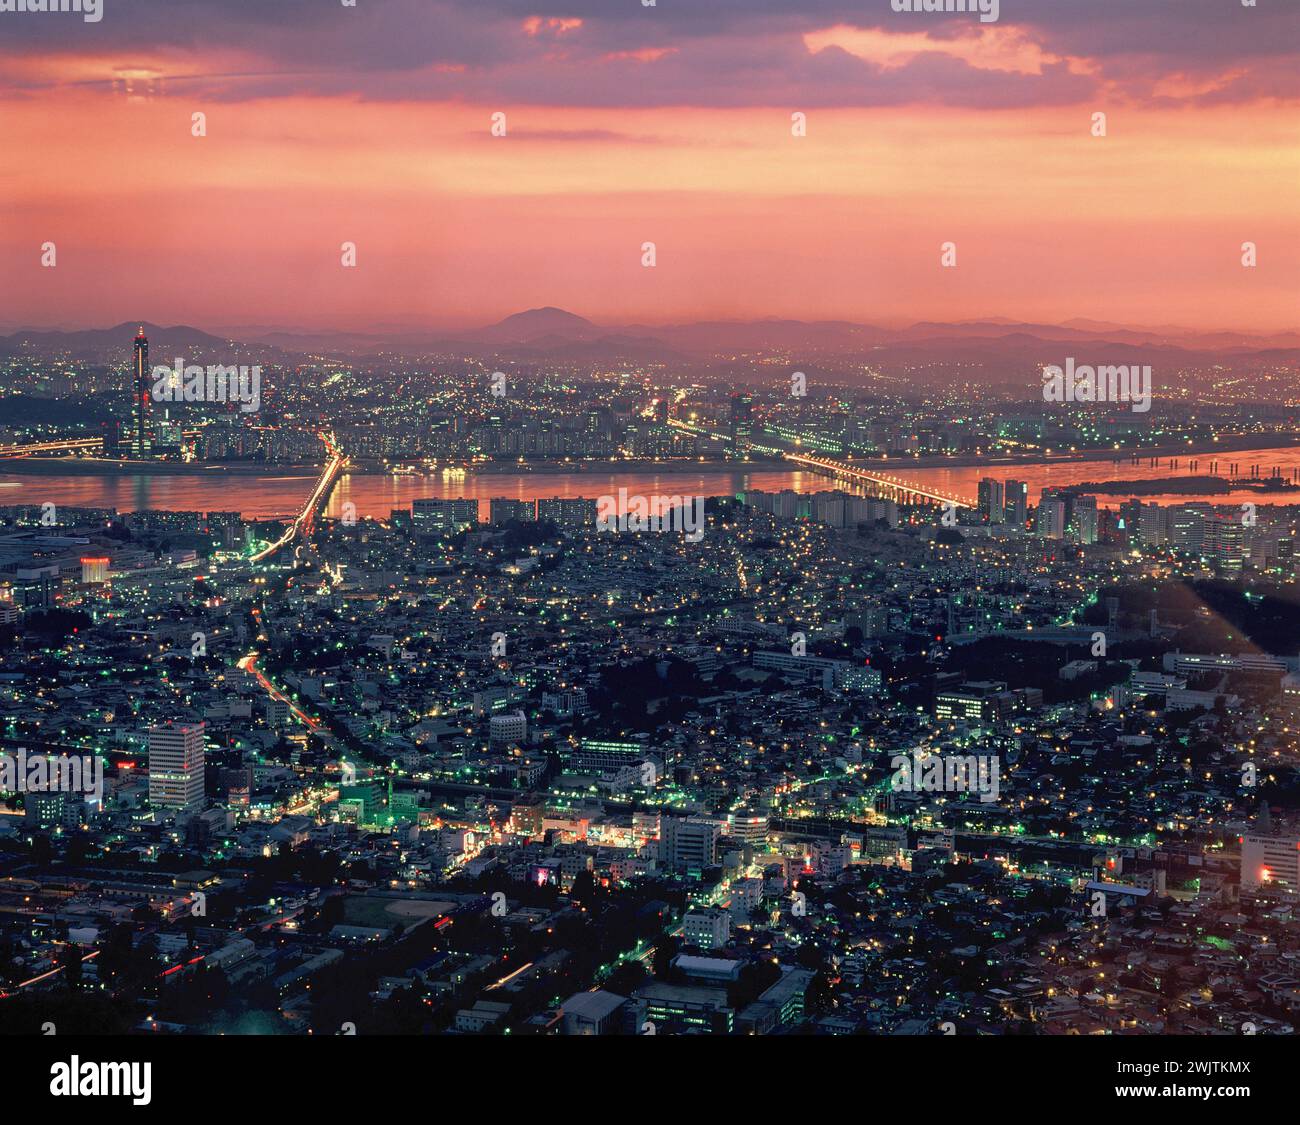 Corée du Sud. Séoul. Vue d'ensemble de la ville avec la rivière Han au crépuscule. Banque D'Images